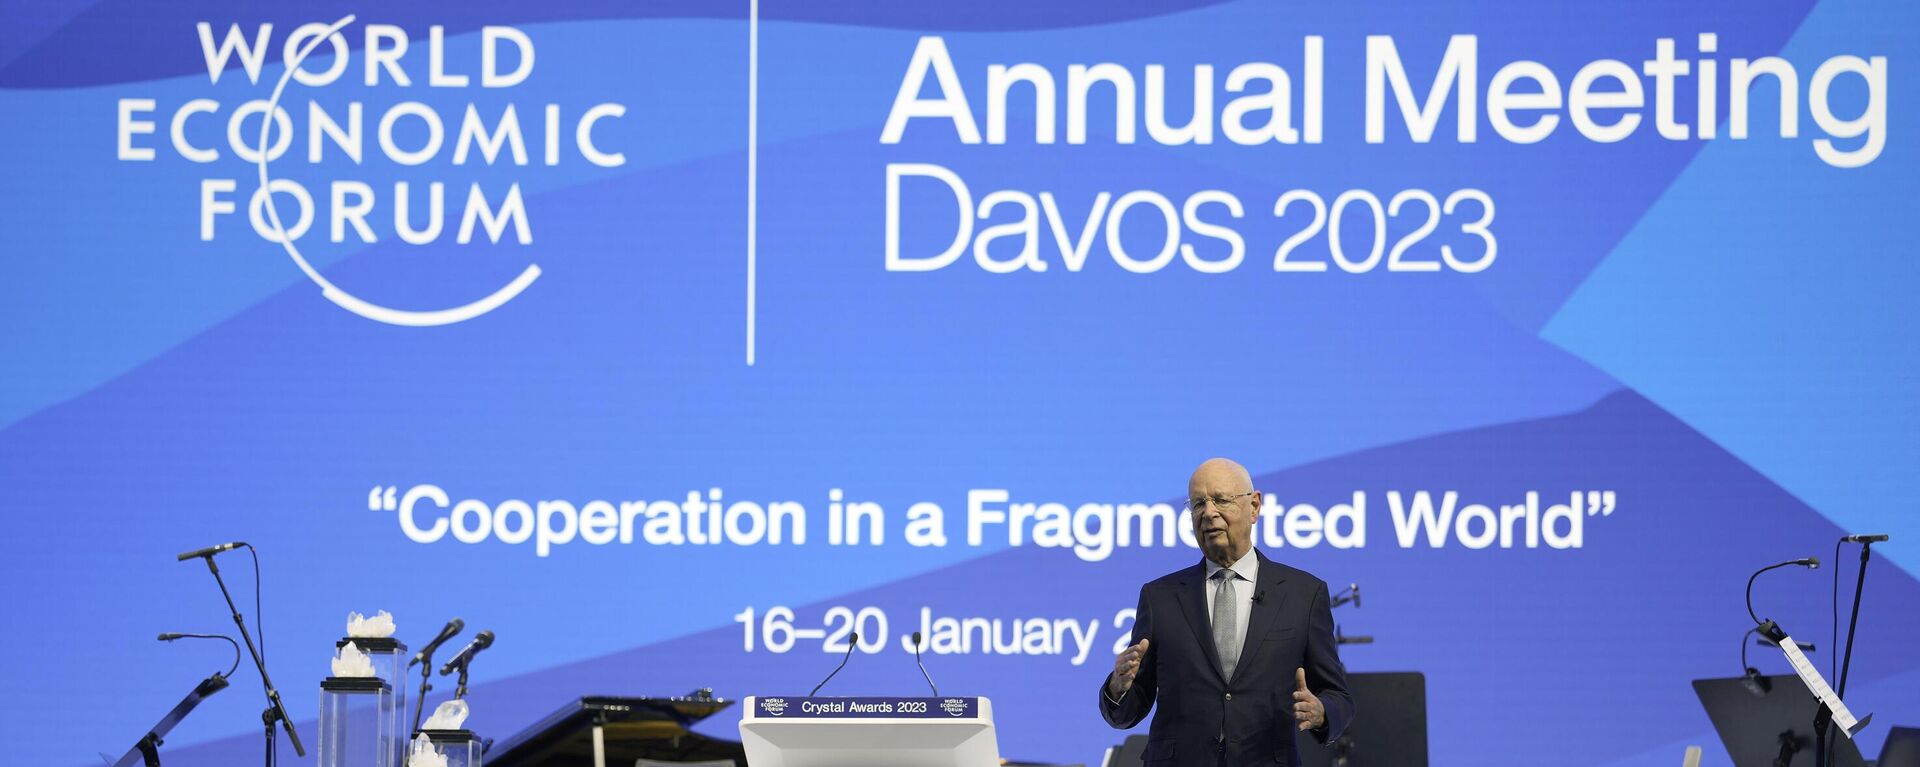 El fundador del Foro Económico Mundial, Klaus Schwab, da la bienvenida a los invitados al Foro Económico Mundial de Davos 2023 - Sputnik Mundo, 1920, 16.01.2023